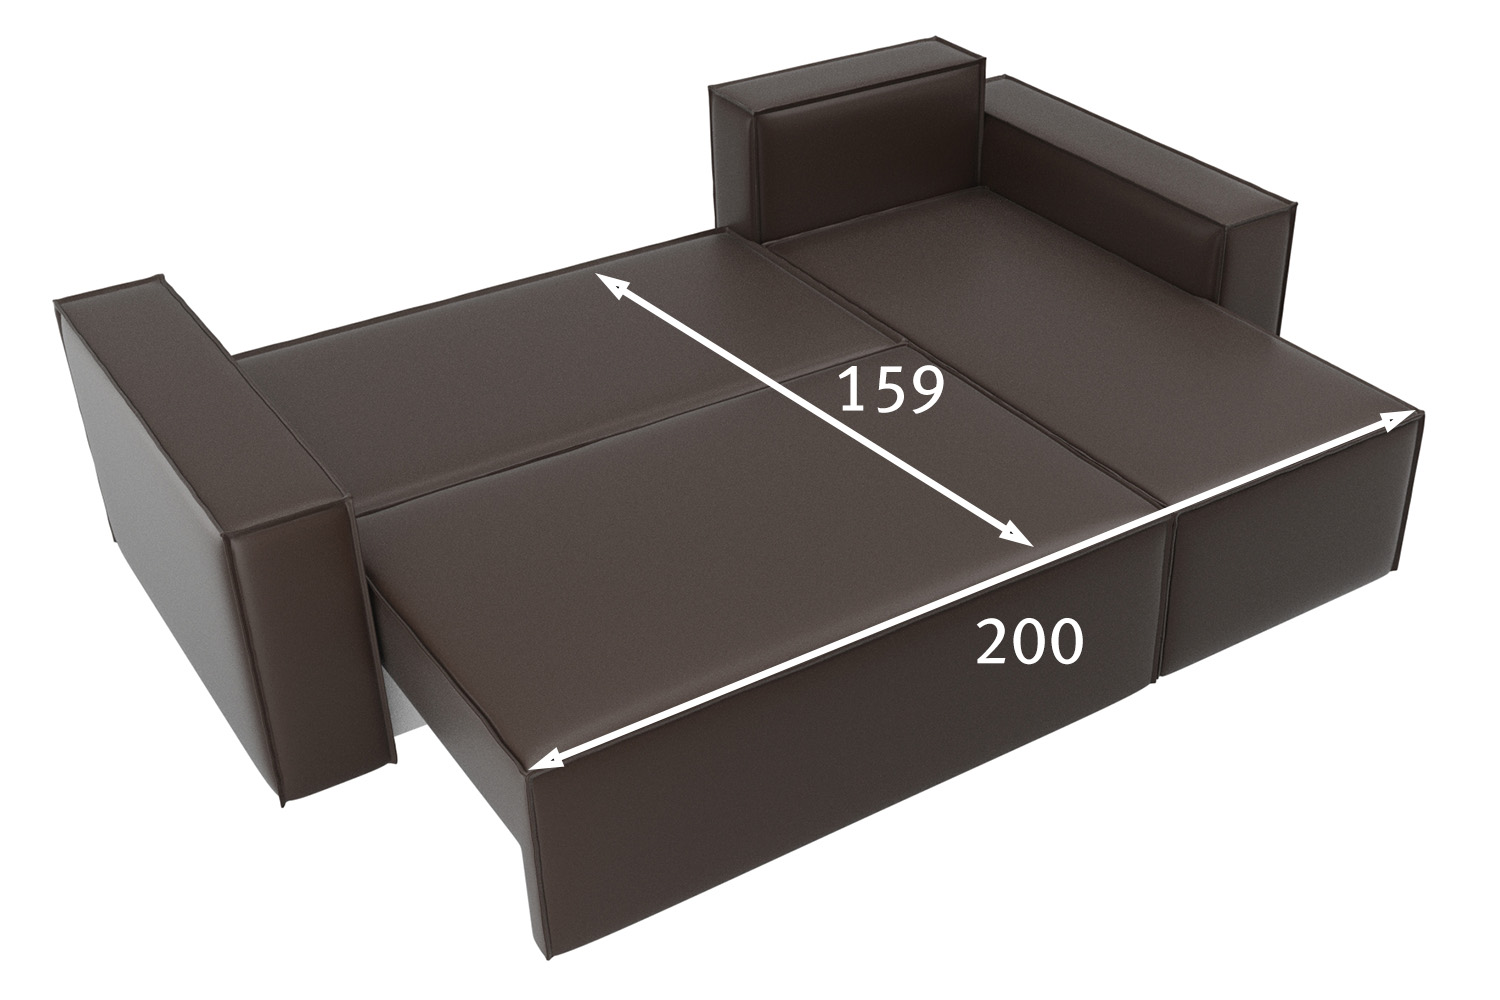 Объем дивана в кубических метрах для перевозки